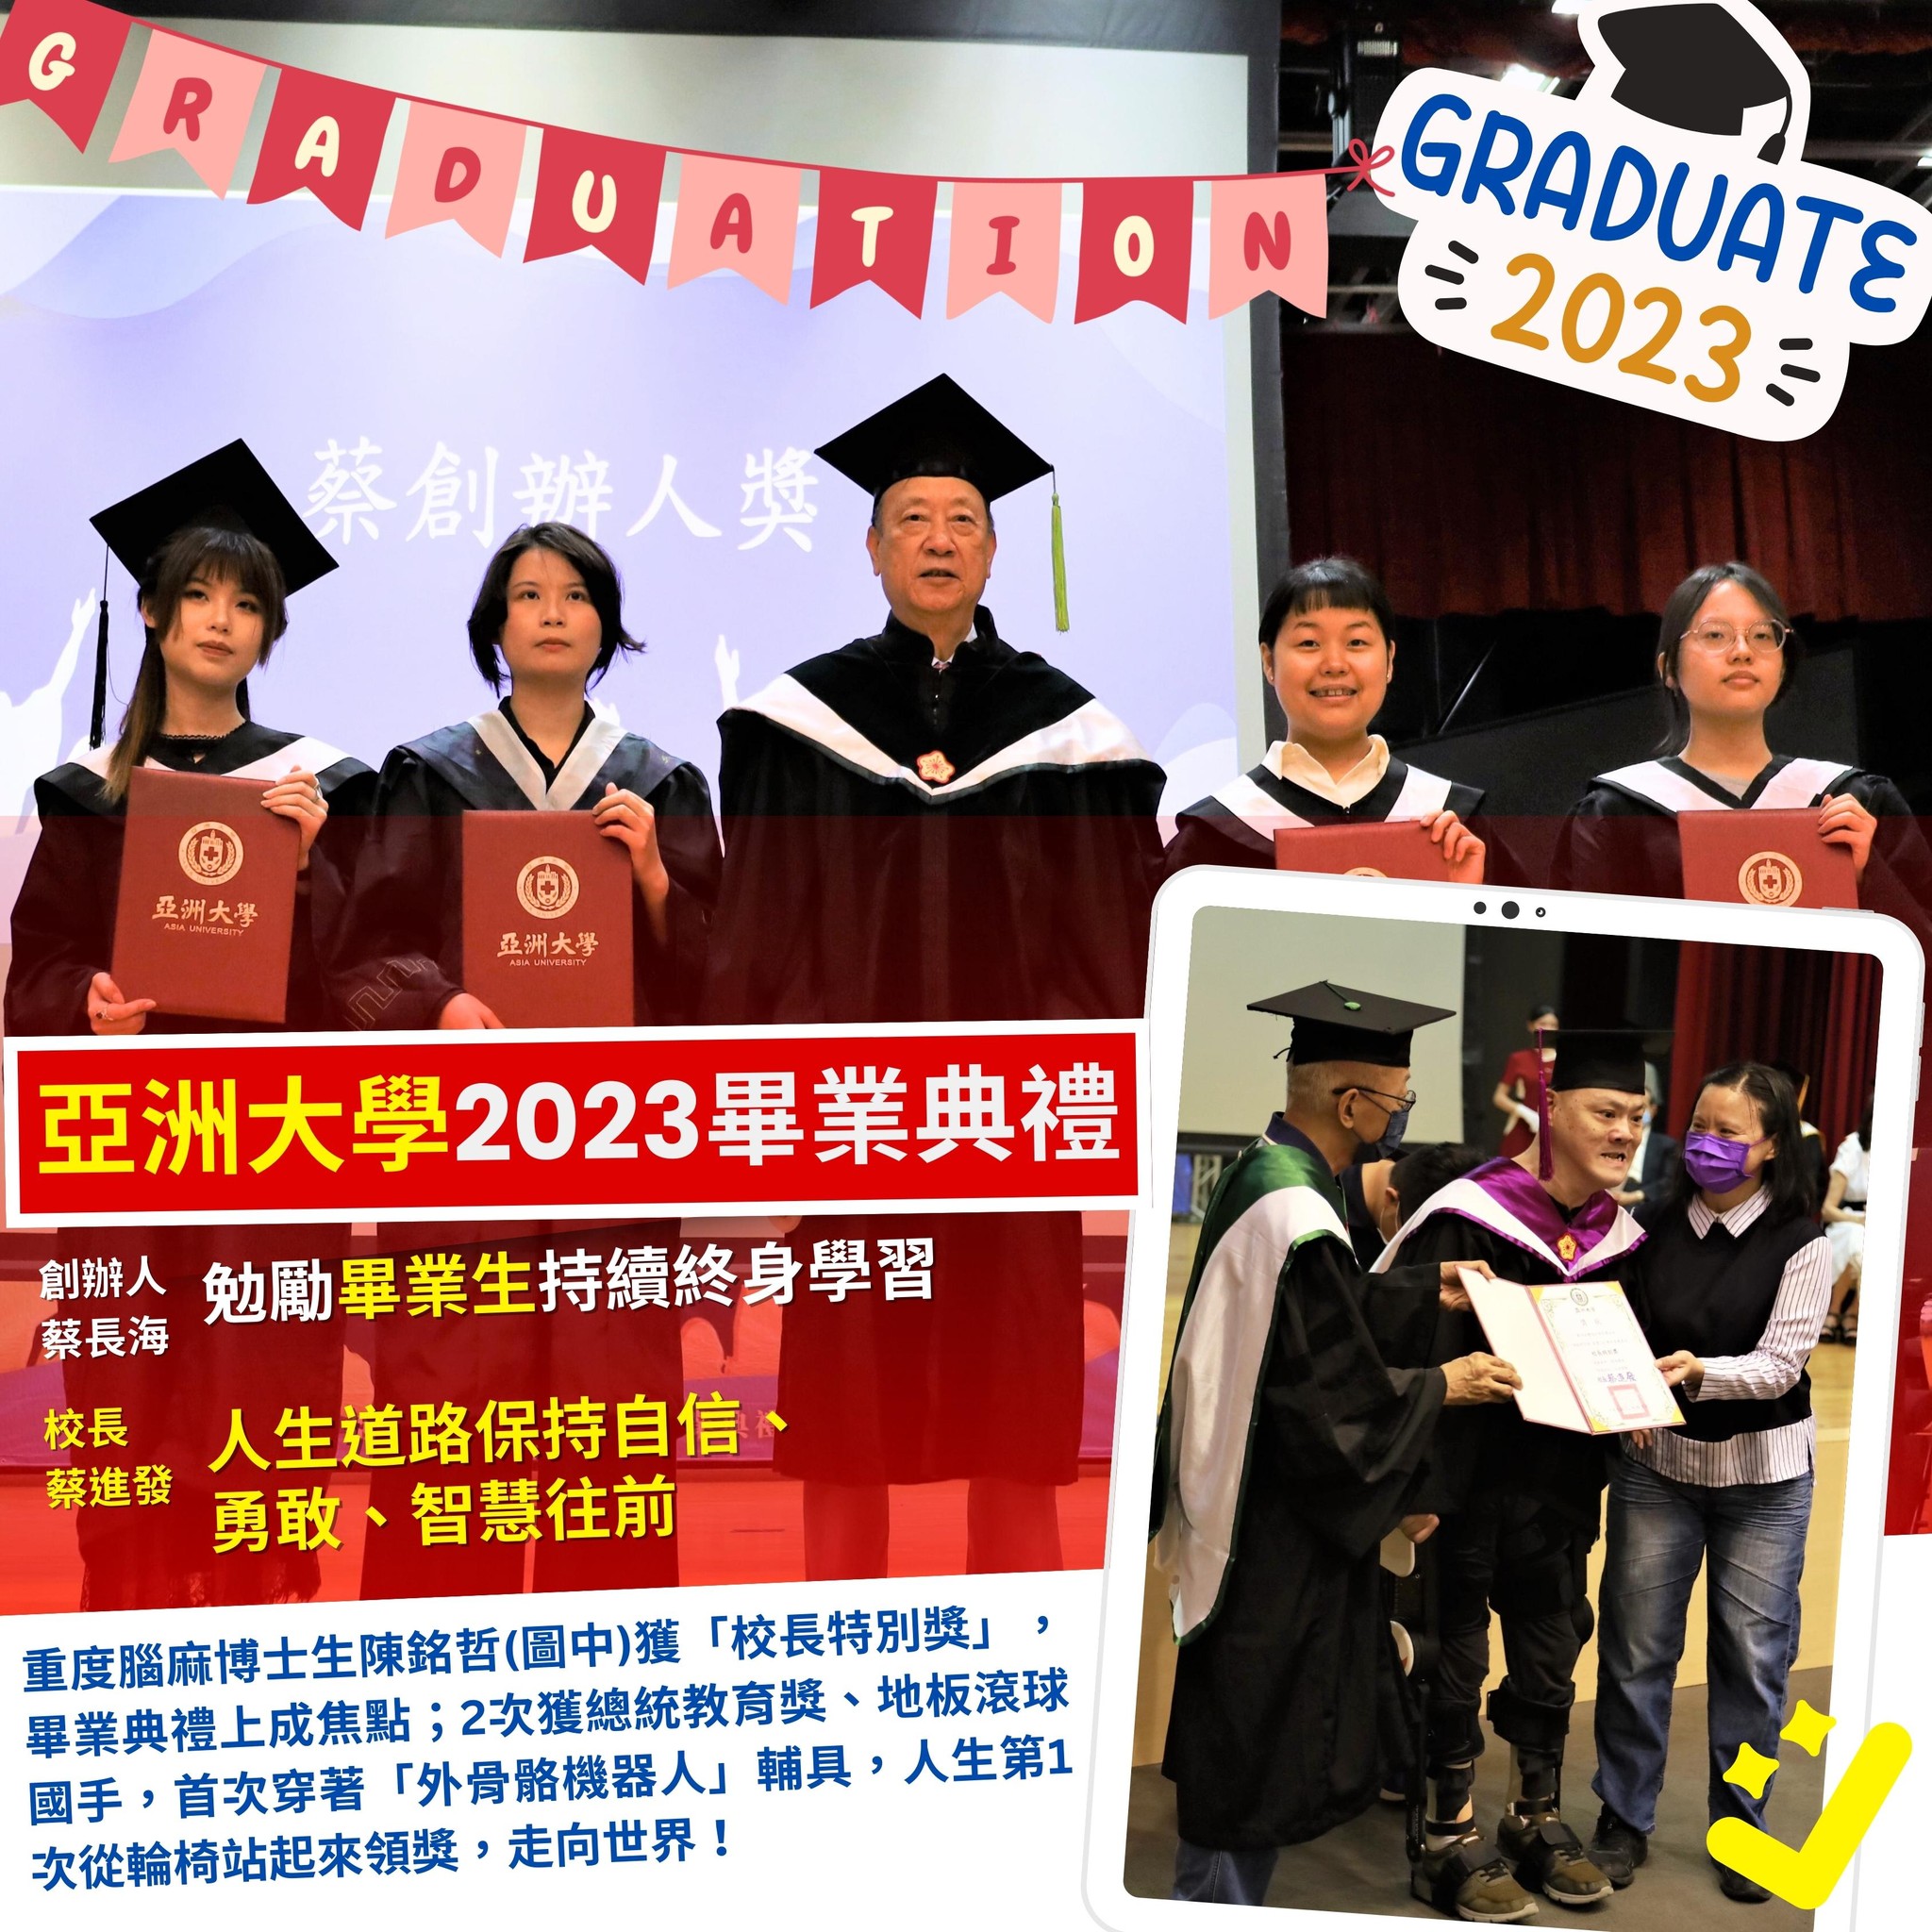 亚洲大学2023毕业典礼　创办人勉励毕业生持续终身学习